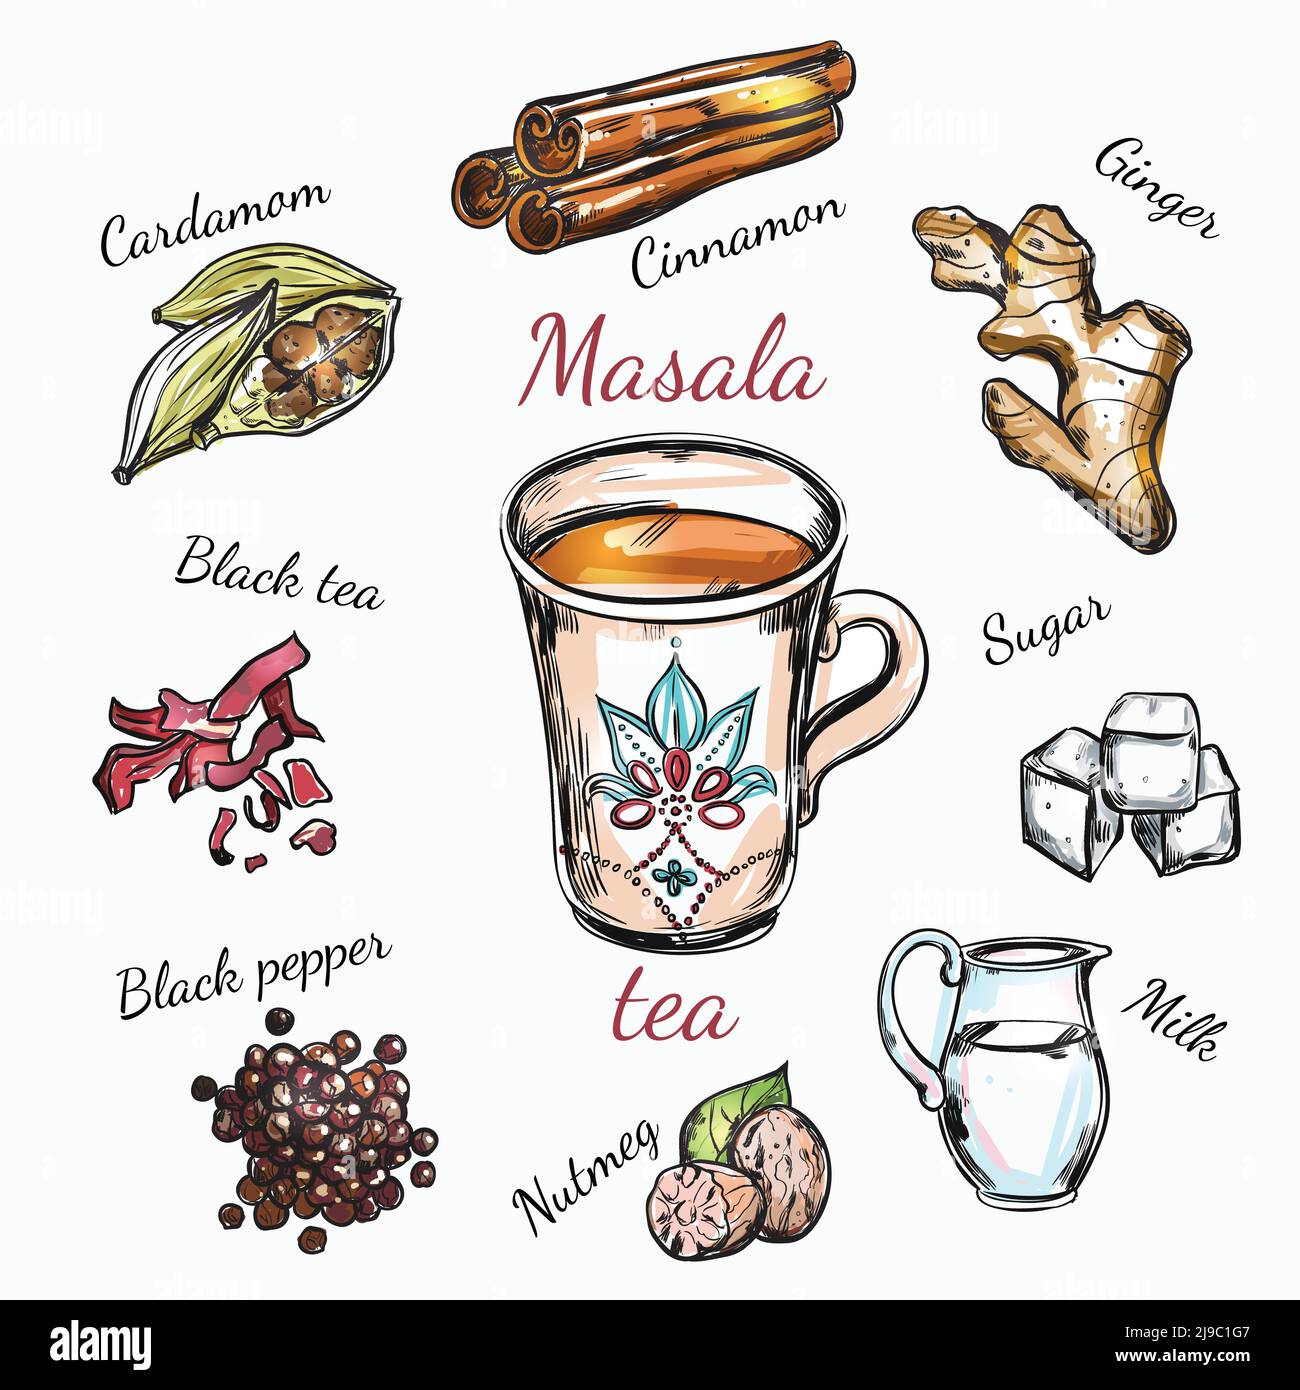 Composition de recettes d'épices indiennes avec ensemble d'épices isolées et recette de l'illustration du vecteur de thé masala Illustration de Vecteur